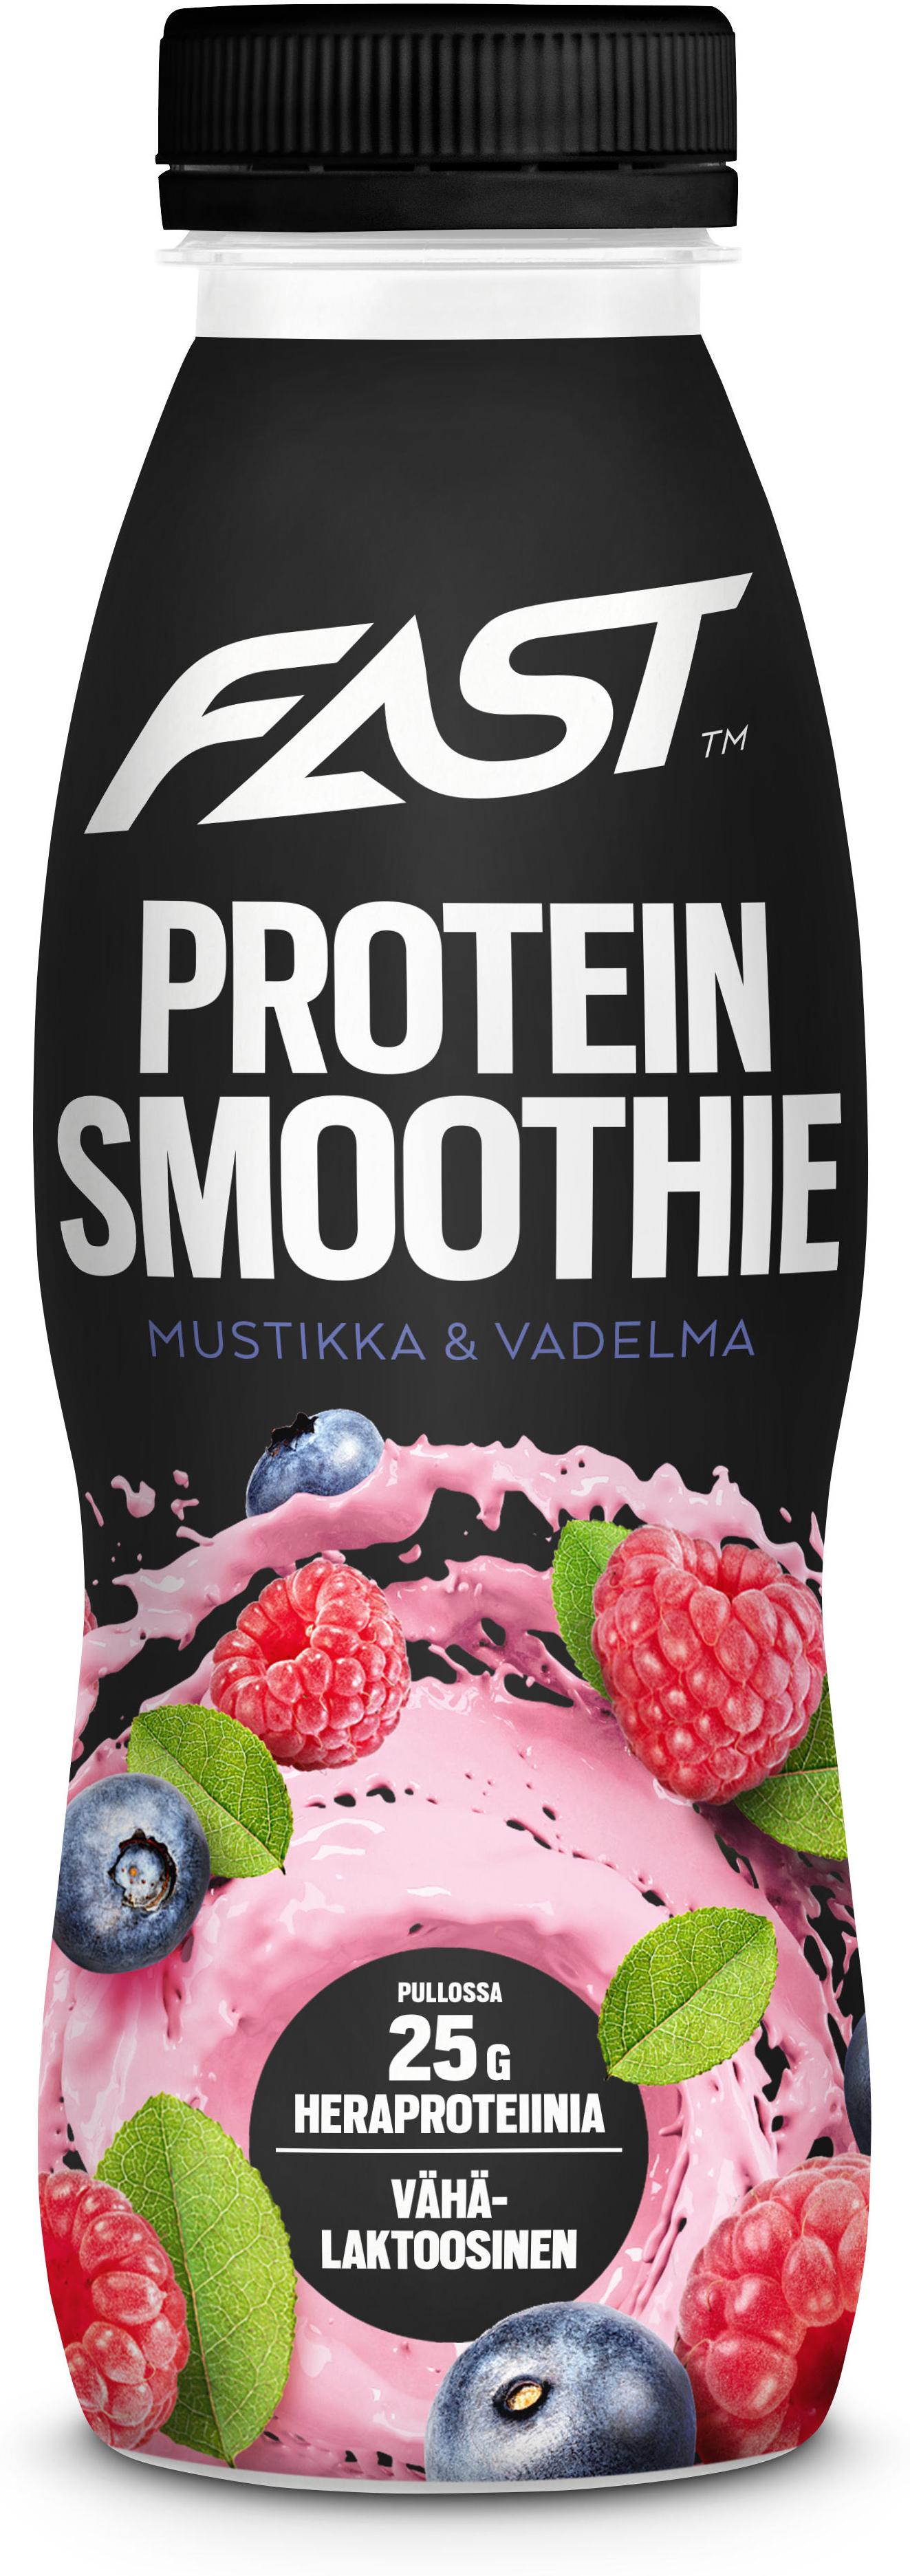 Top 122+ imagen protein smoothie fast